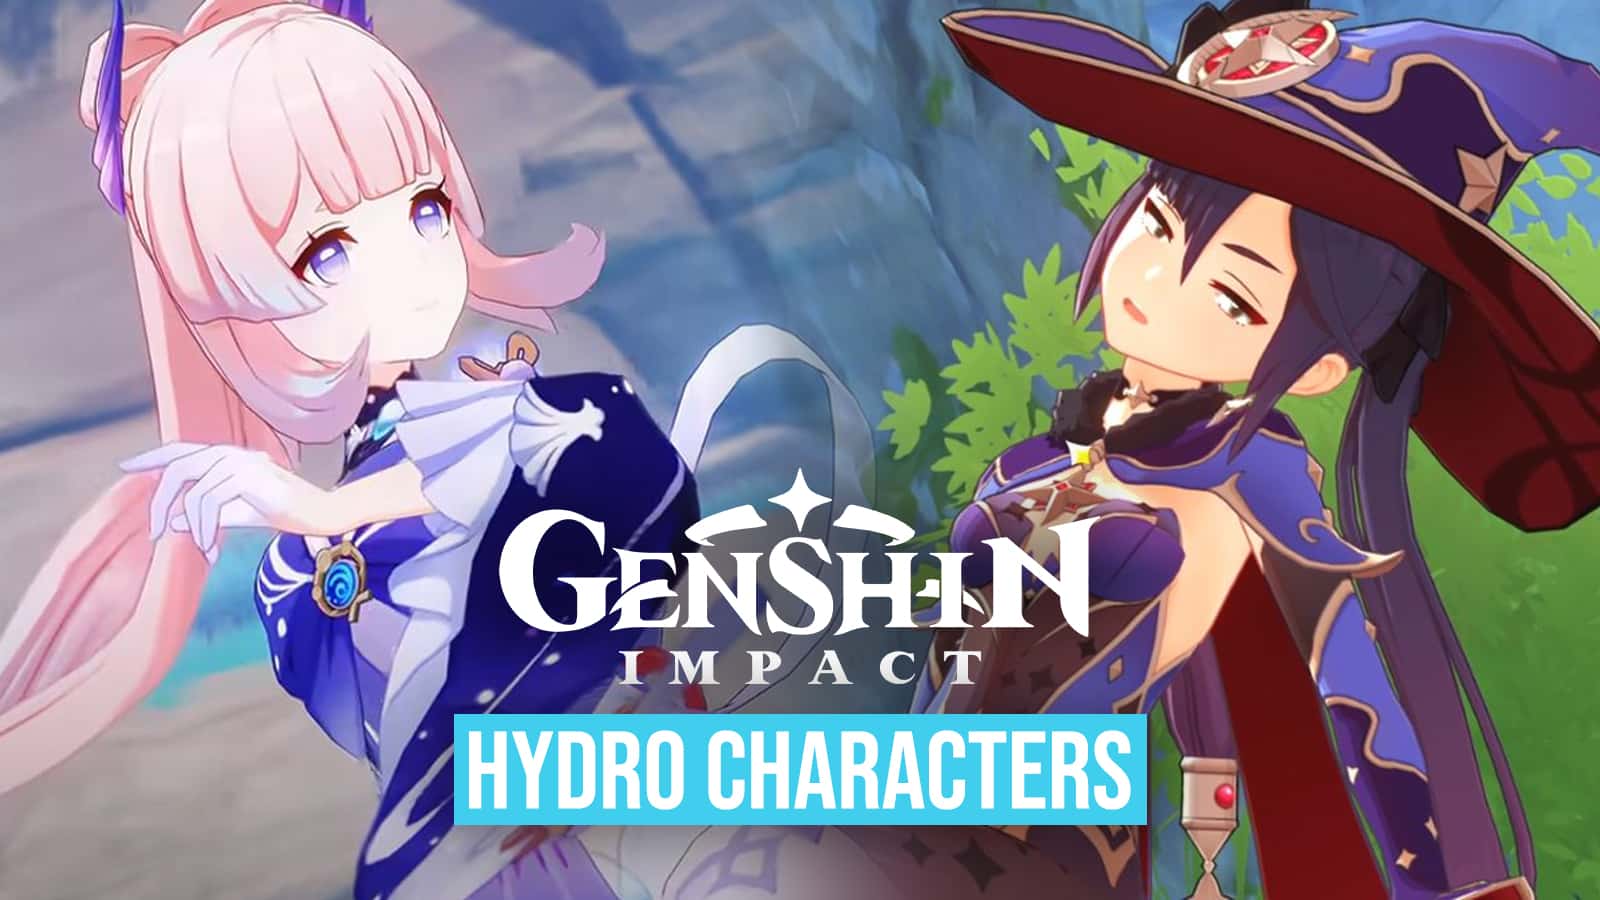 Hydro characters Kokomi and Mona in Genshin Impact